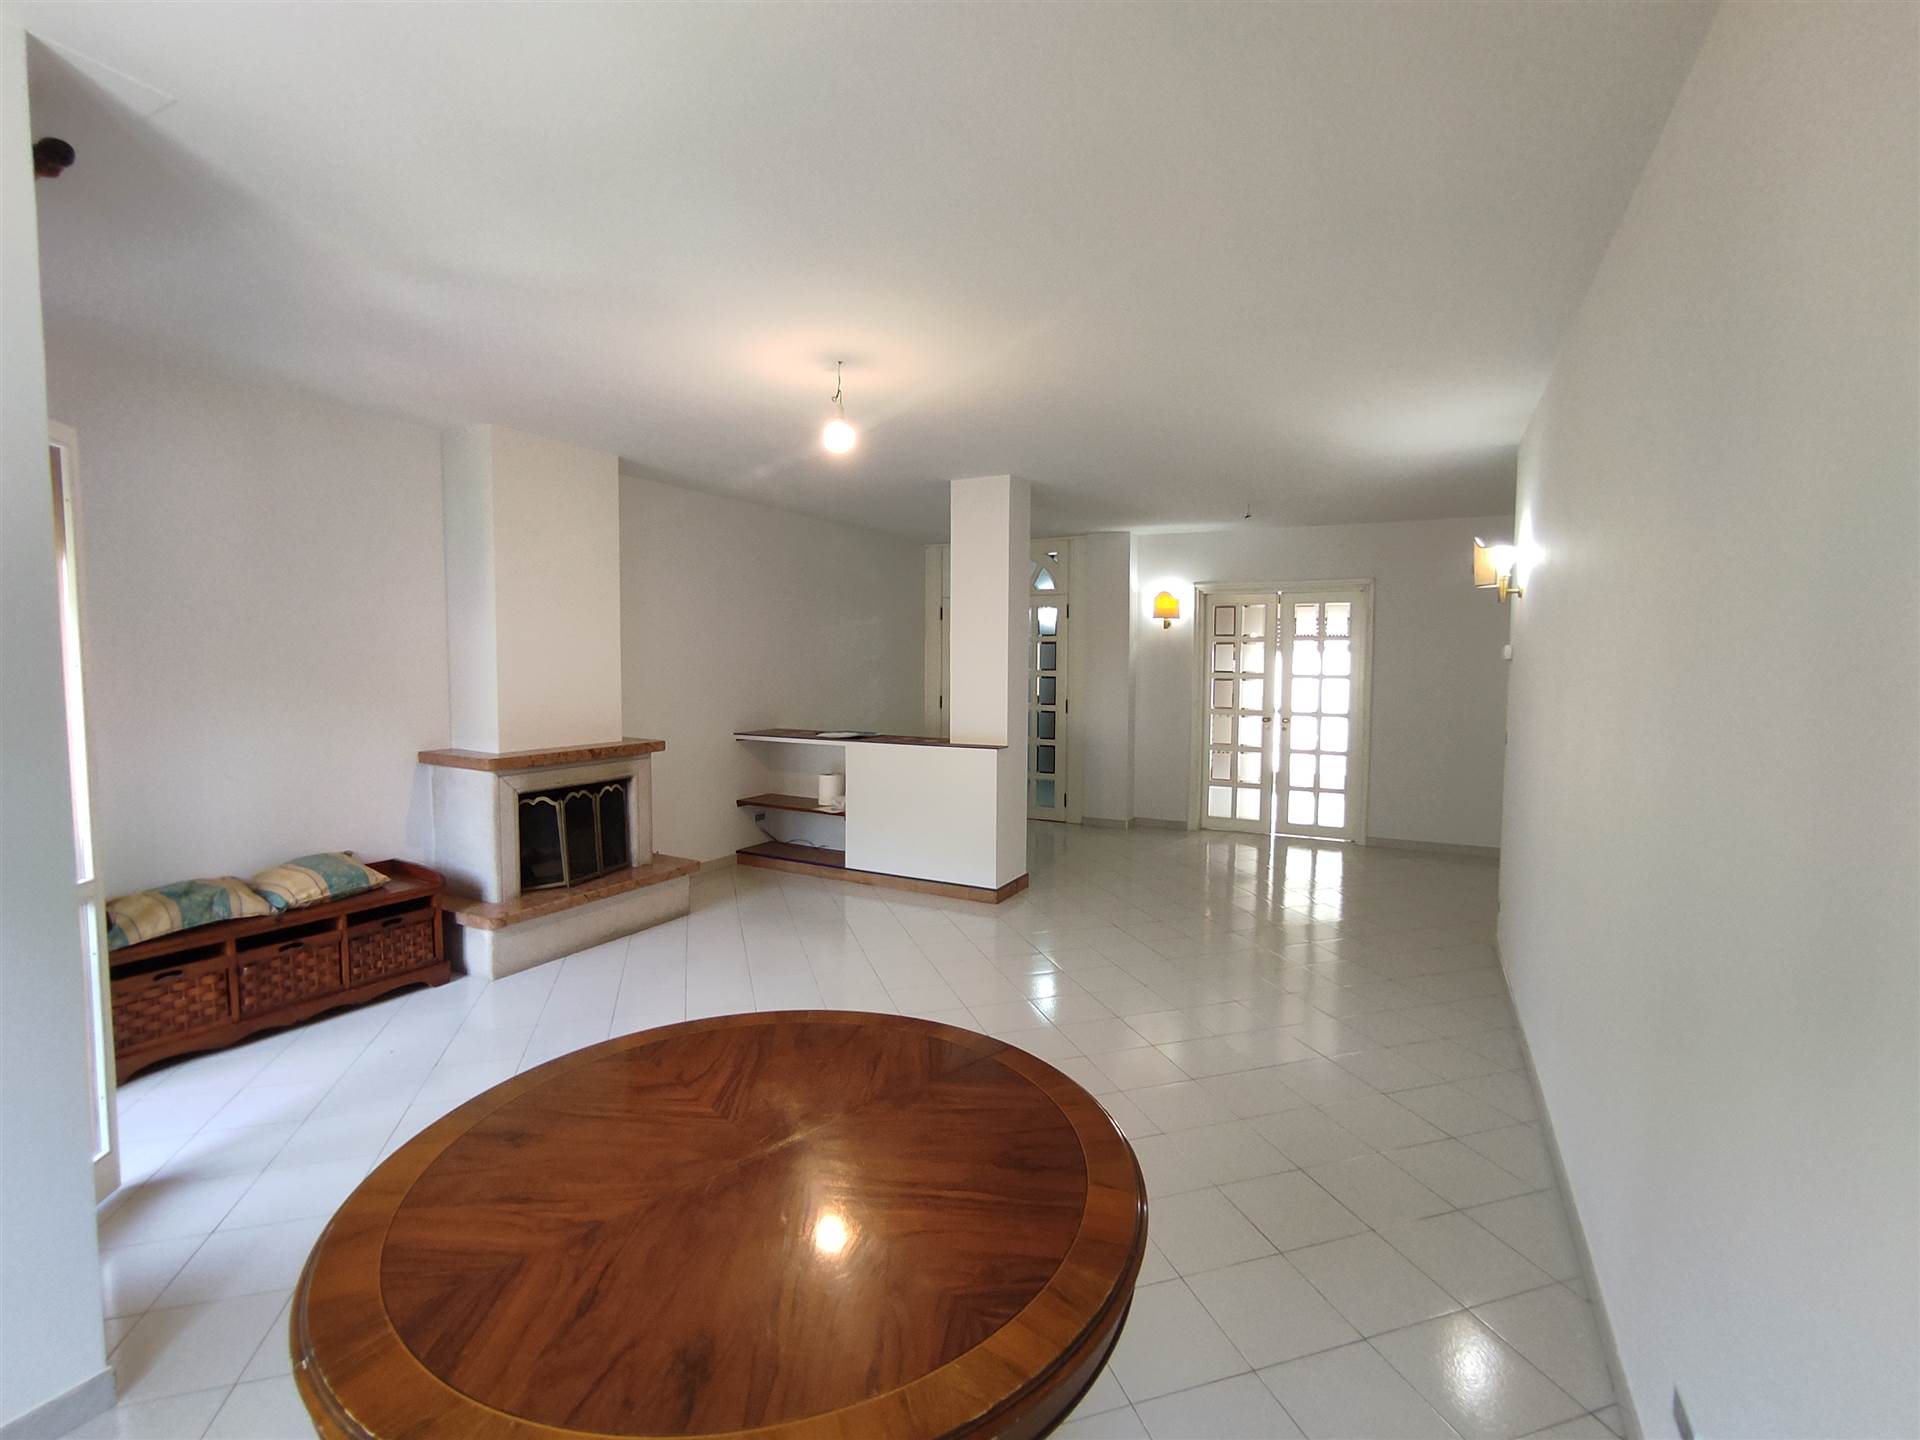 Appartamento in vendita a Montella, 6 locali, prezzo € 195.000 | PortaleAgenzieImmobiliari.it